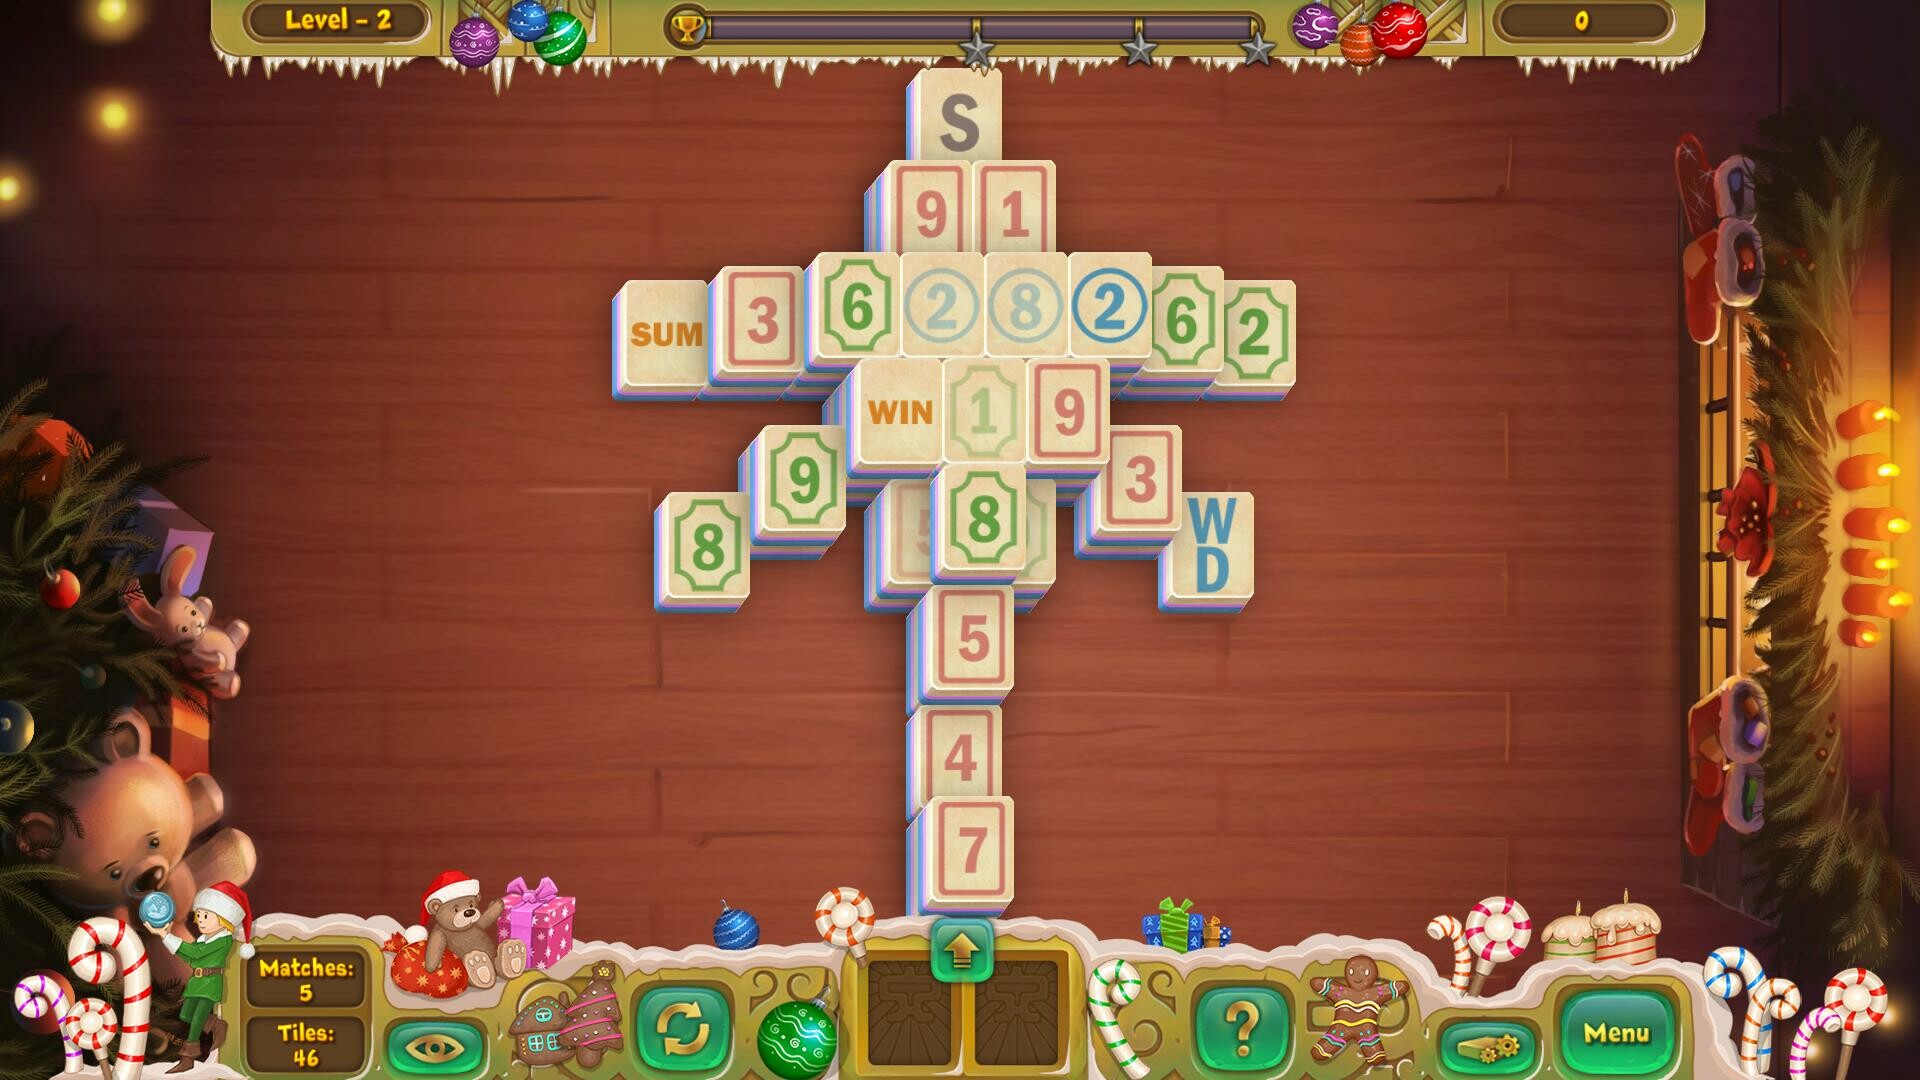 Publish Mahjong Tiles Christmas on your website - GameDistribution